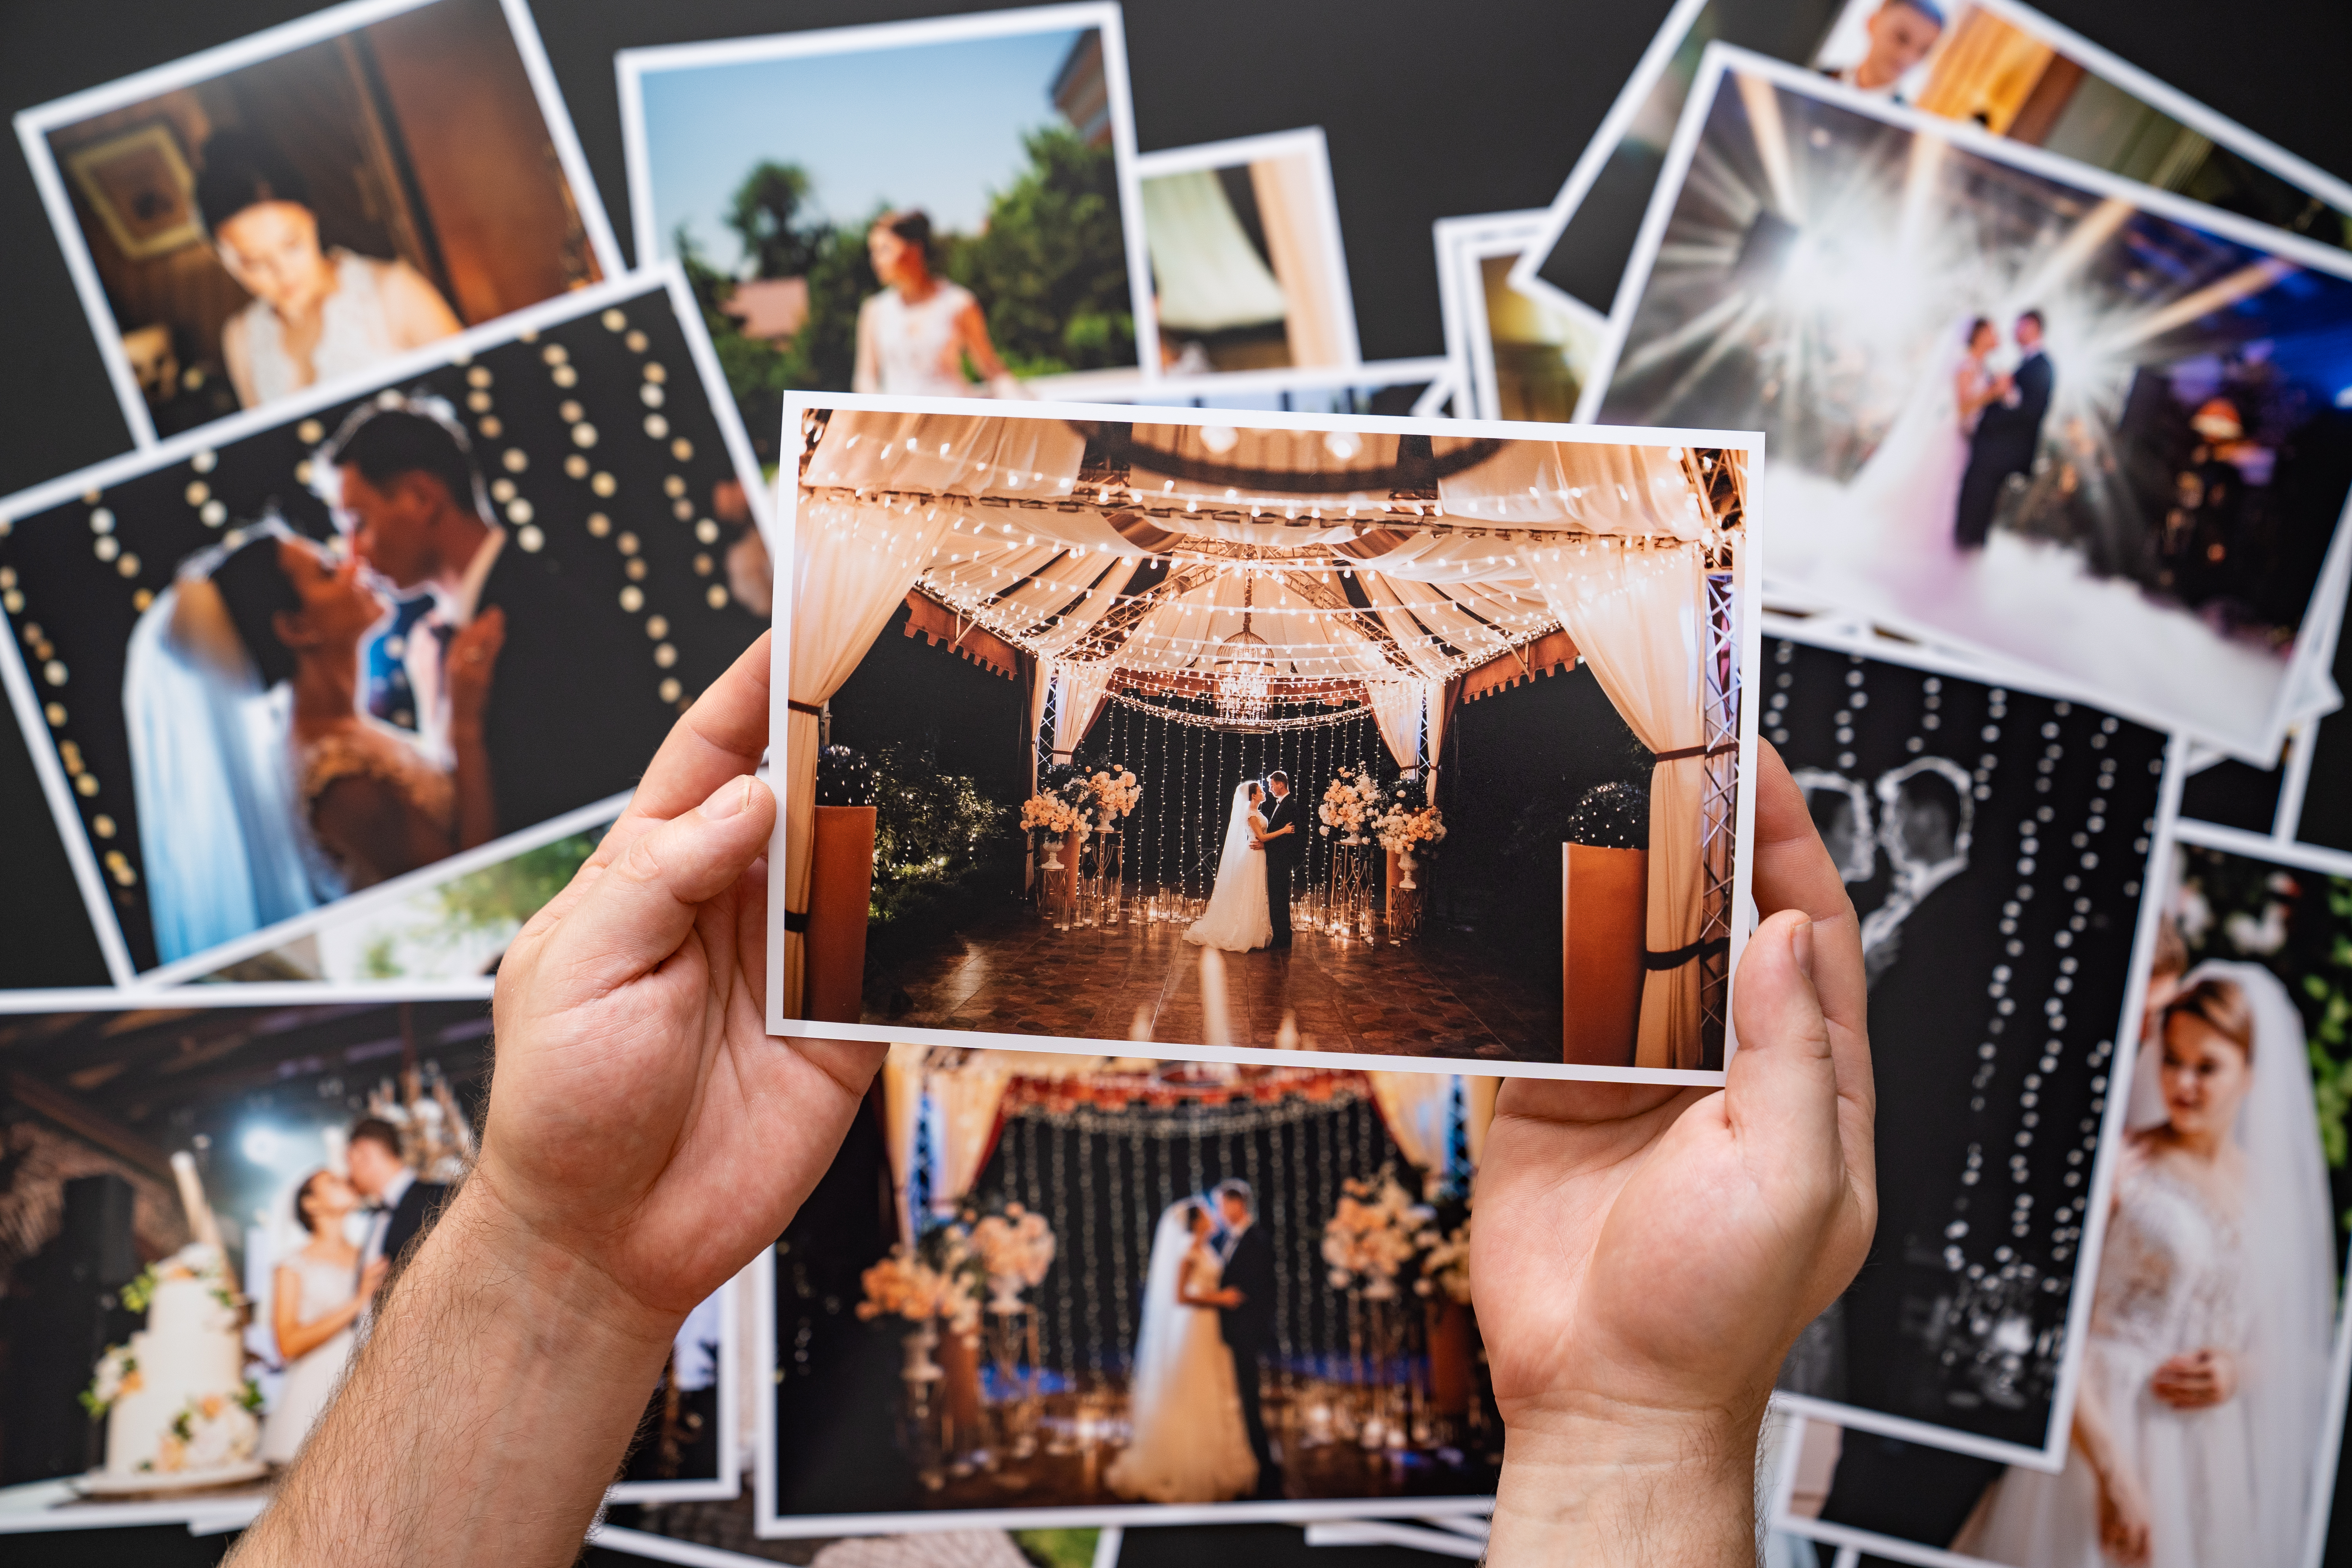 Las manos extienden una copia impresa de las fotos de la boda | Fuente: Shutterstock